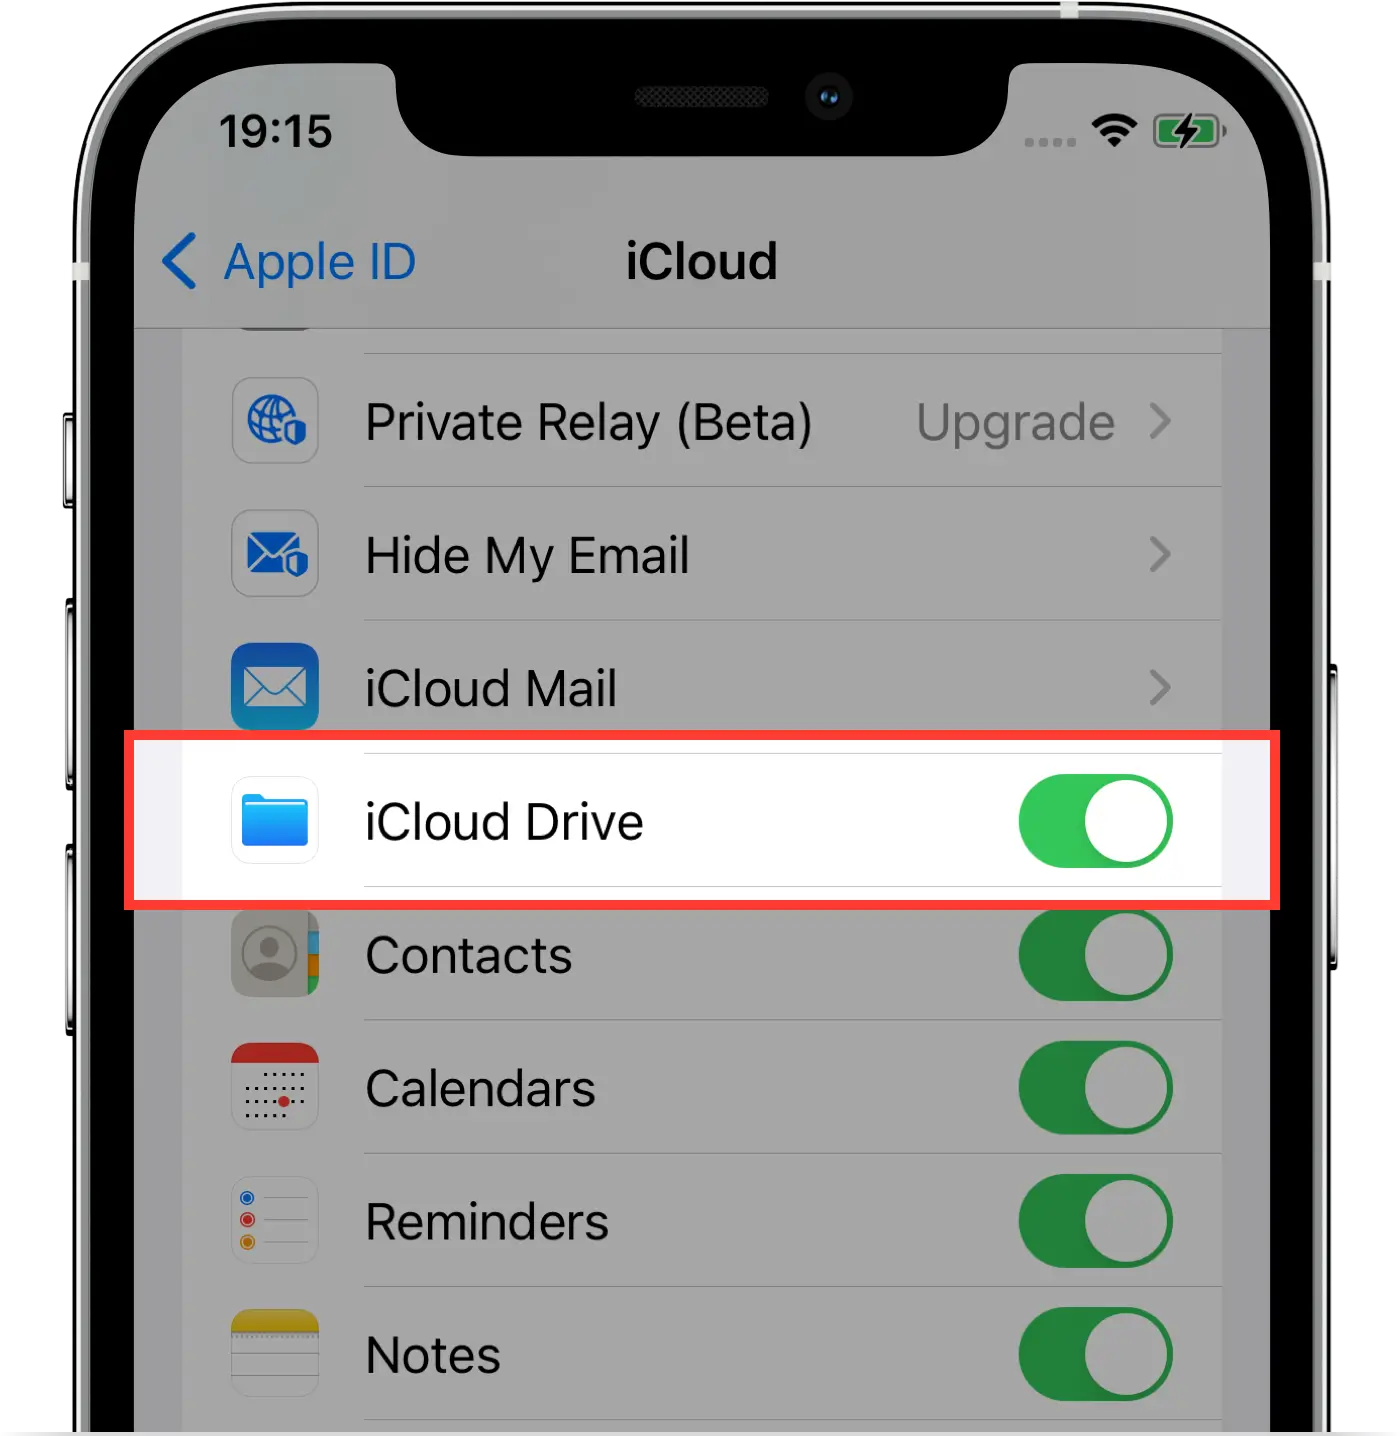 Turn on iCloud Drive on iPhone